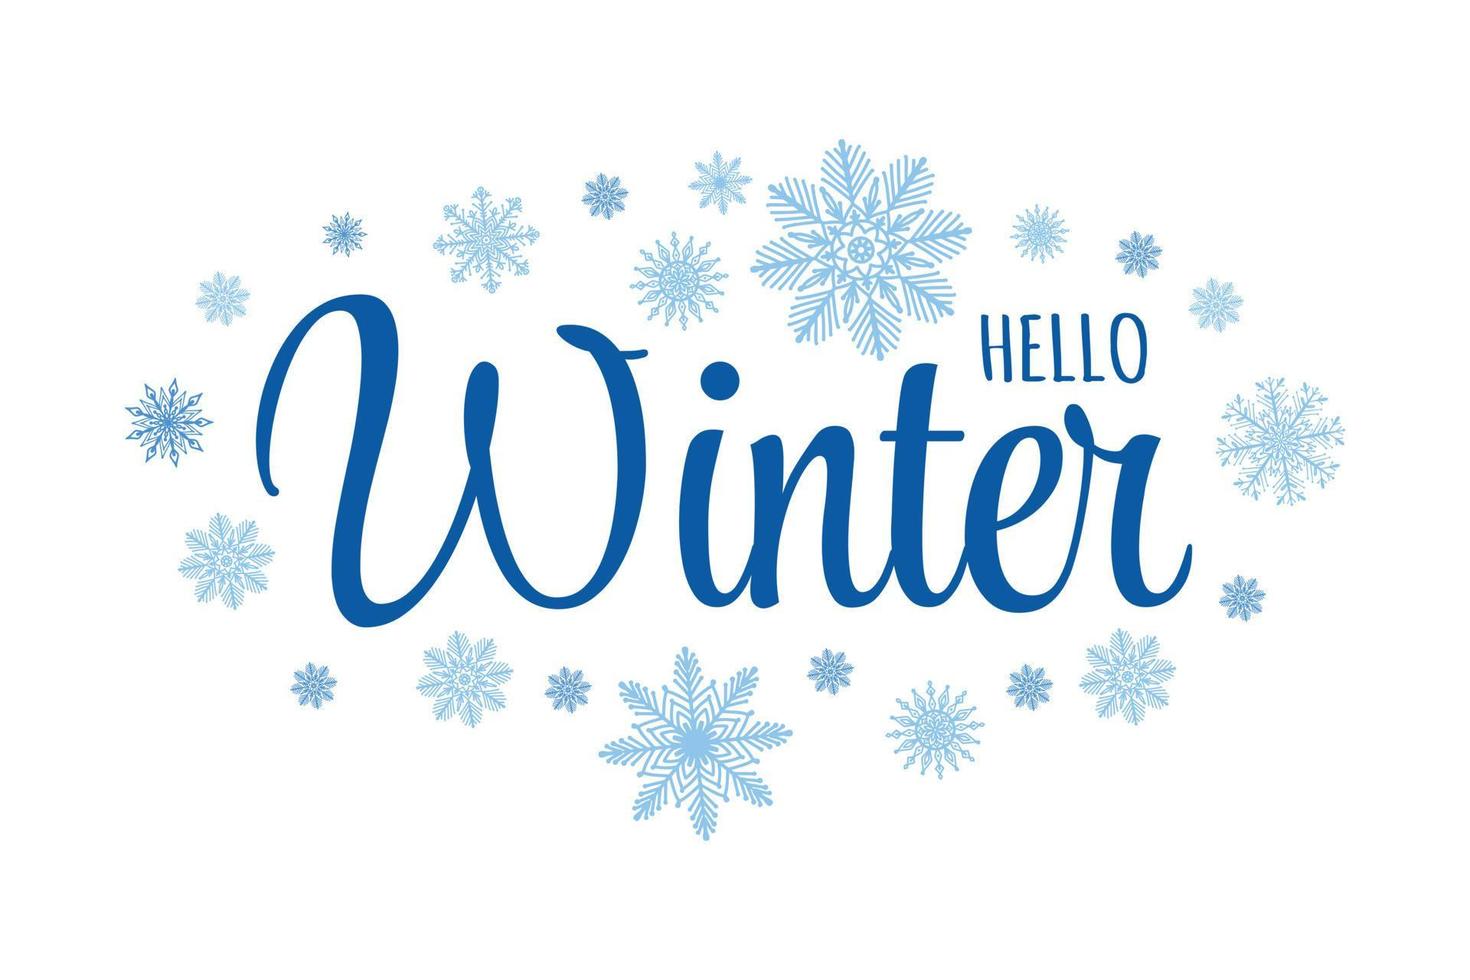 lettrage de calligraphie cursive de texte mignon - bonjour l'hiver. carte de voeux saisonnière avec différents flocons de neige dessinés à la main. vecteur